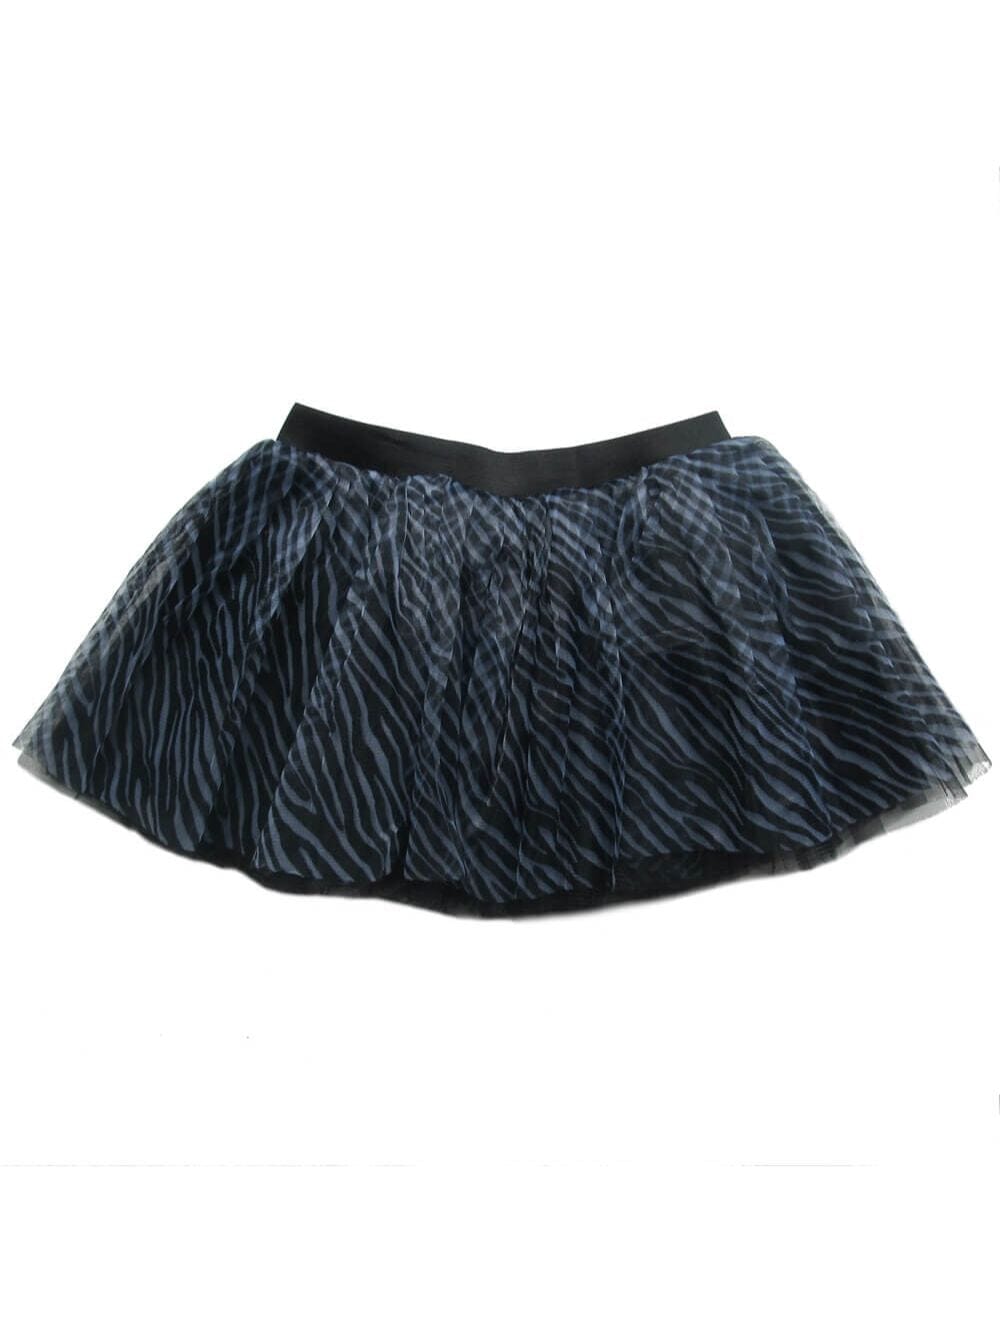 Zebra Adult Size Women's 5K Running Tutu Skirt Costume - Sydney So Sweet